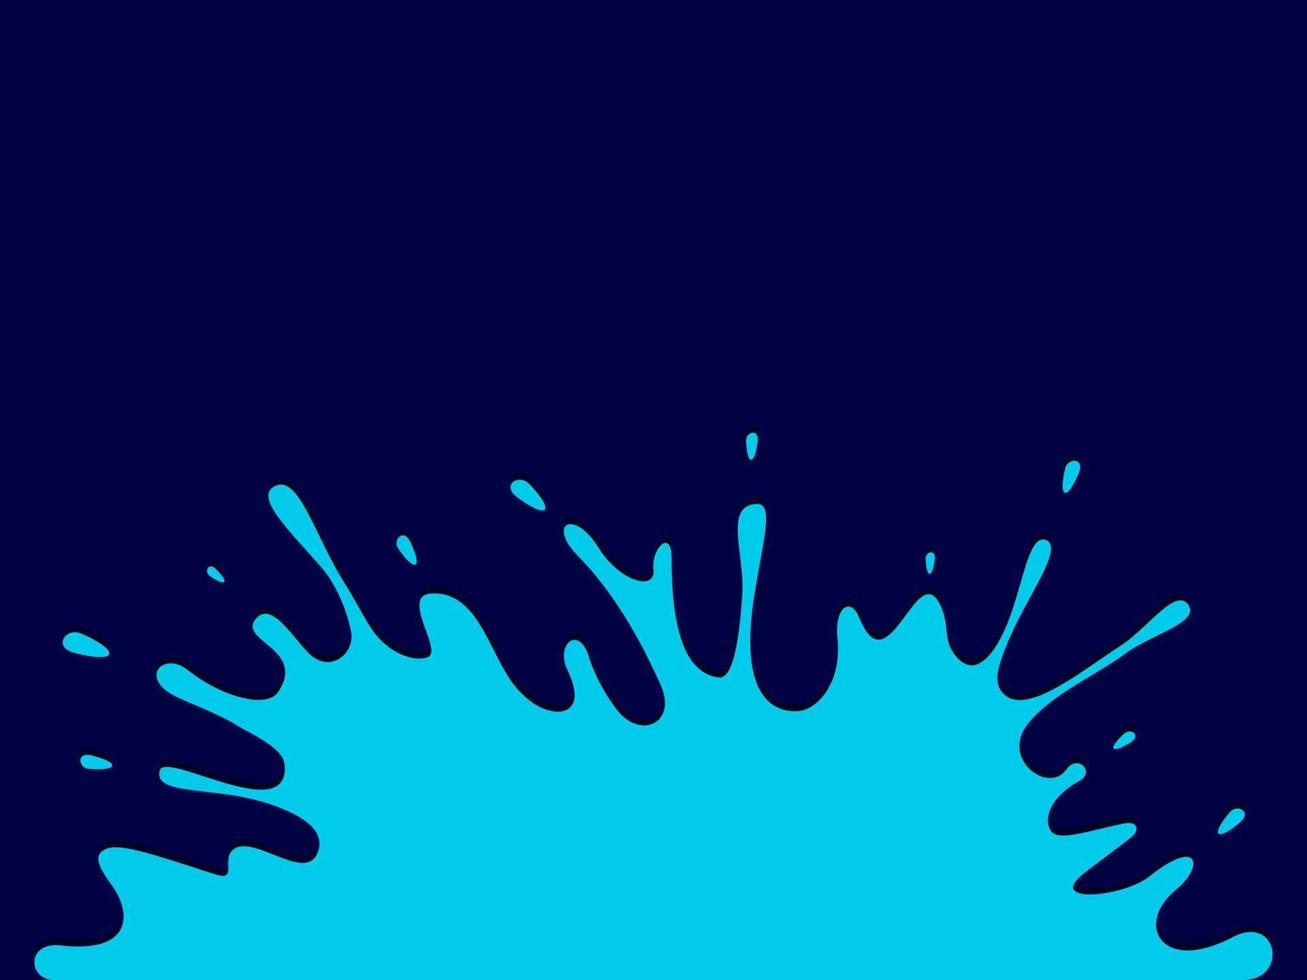 Klecks blauer Farbe auf dunklem Hintergrund vektor